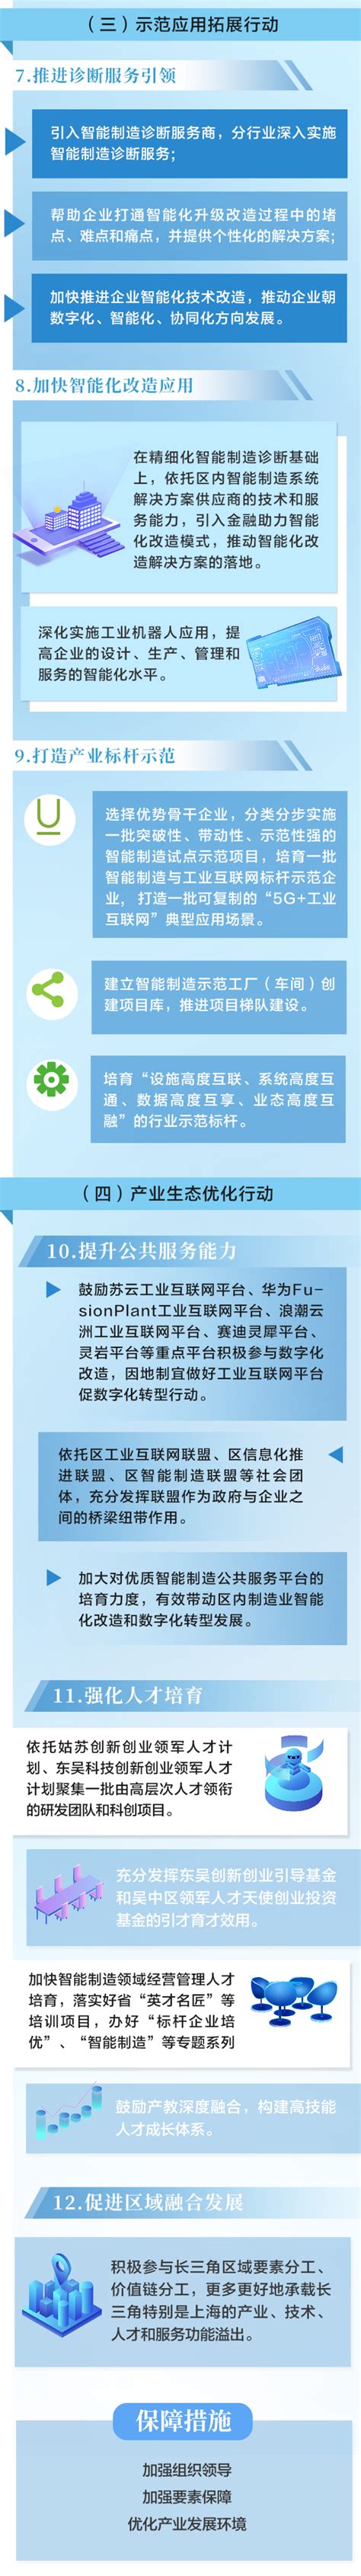 一图看懂《吴中区机器人与智能制造产业提升发展三年行动计划（2021-2023年） - 苏州市吴中区人民政府